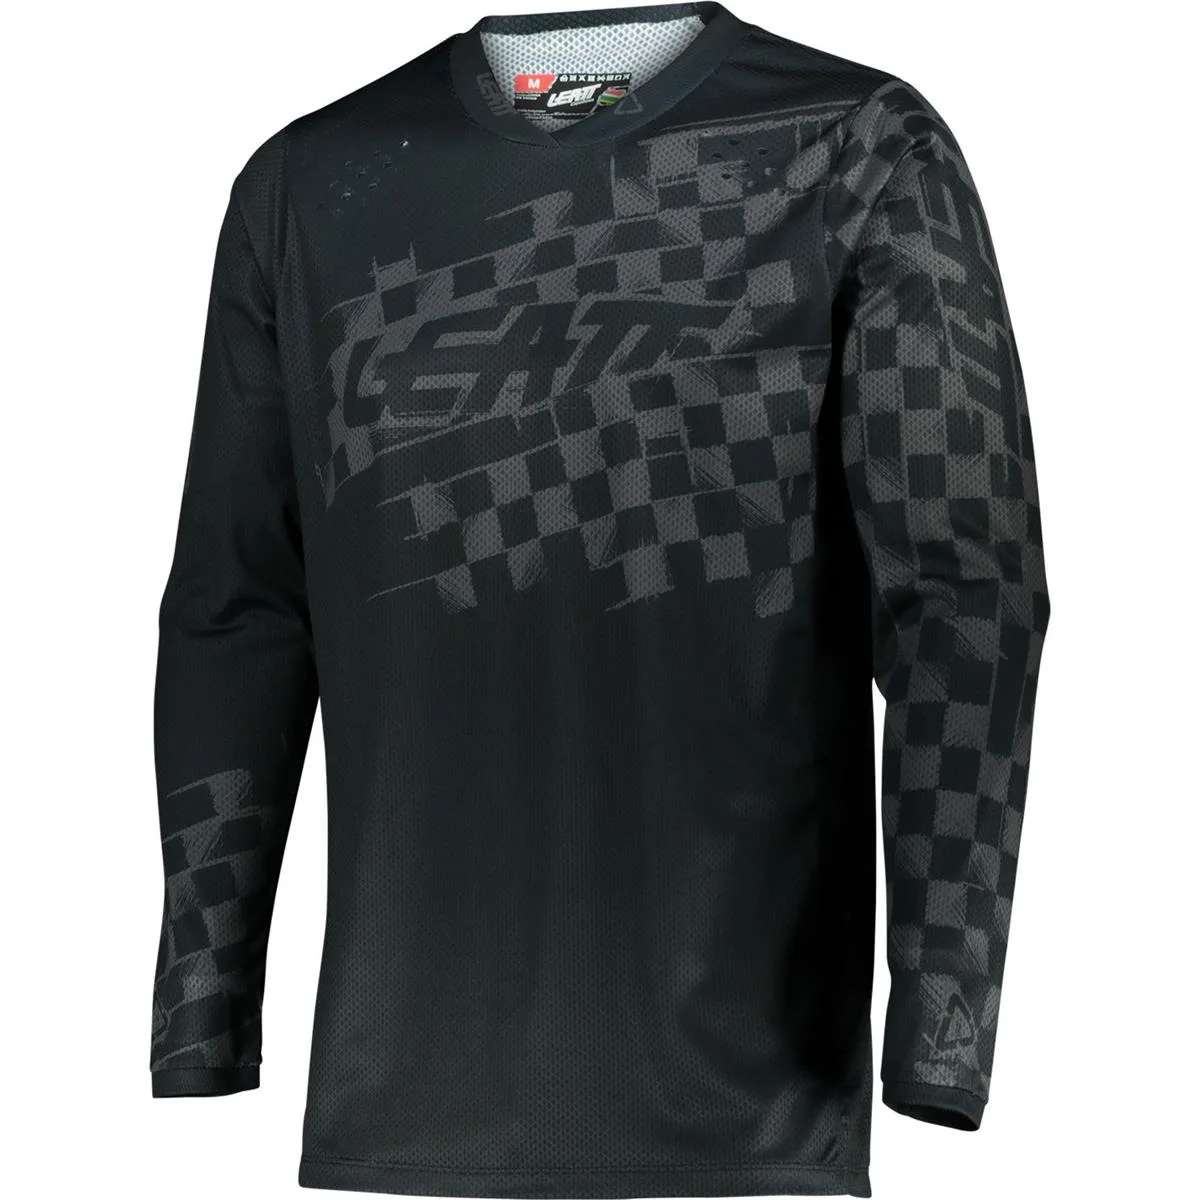 Велосипедная рубашка Enduro MTB Велосипедная рубашка Downhill Camiseta Футболка Для мотокросса Mx Велосипедная одежда Горная футболка Mtb